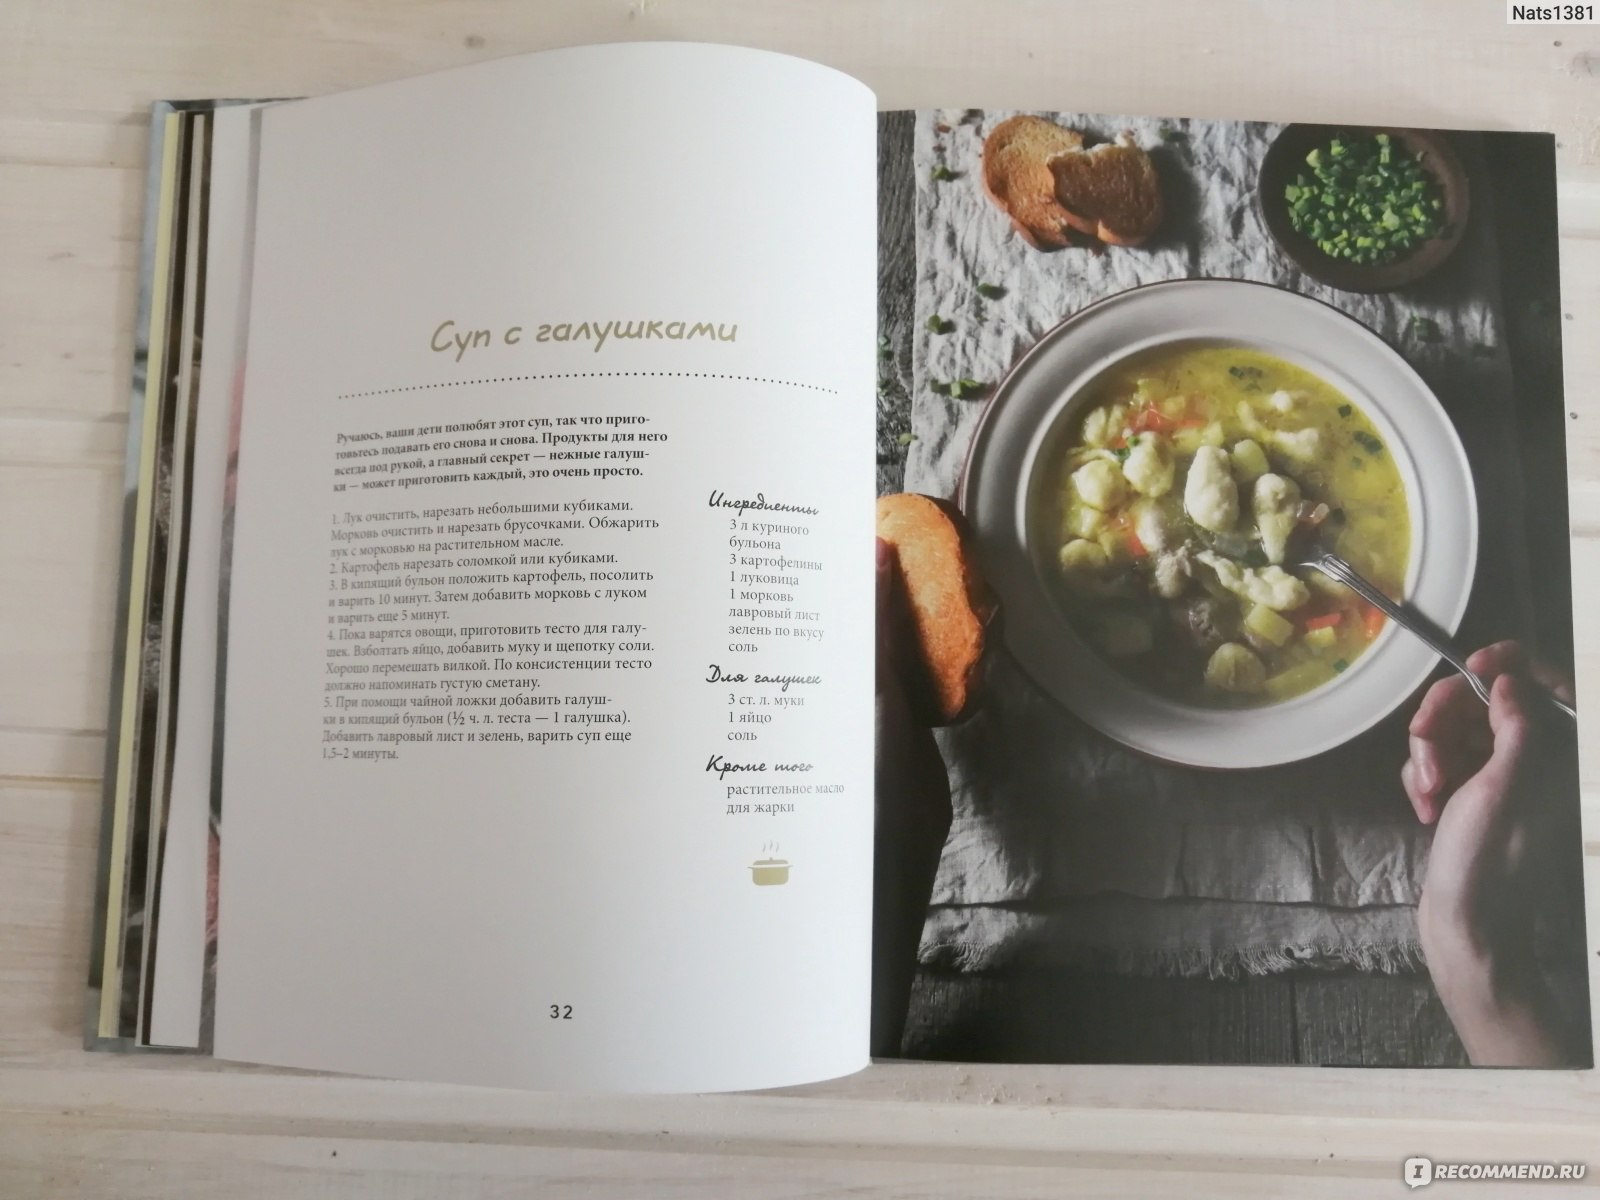 Душевные рецепты. Книга Елены Обуховой-Королева кухни. Книга интересные рецепты душевных блюд.